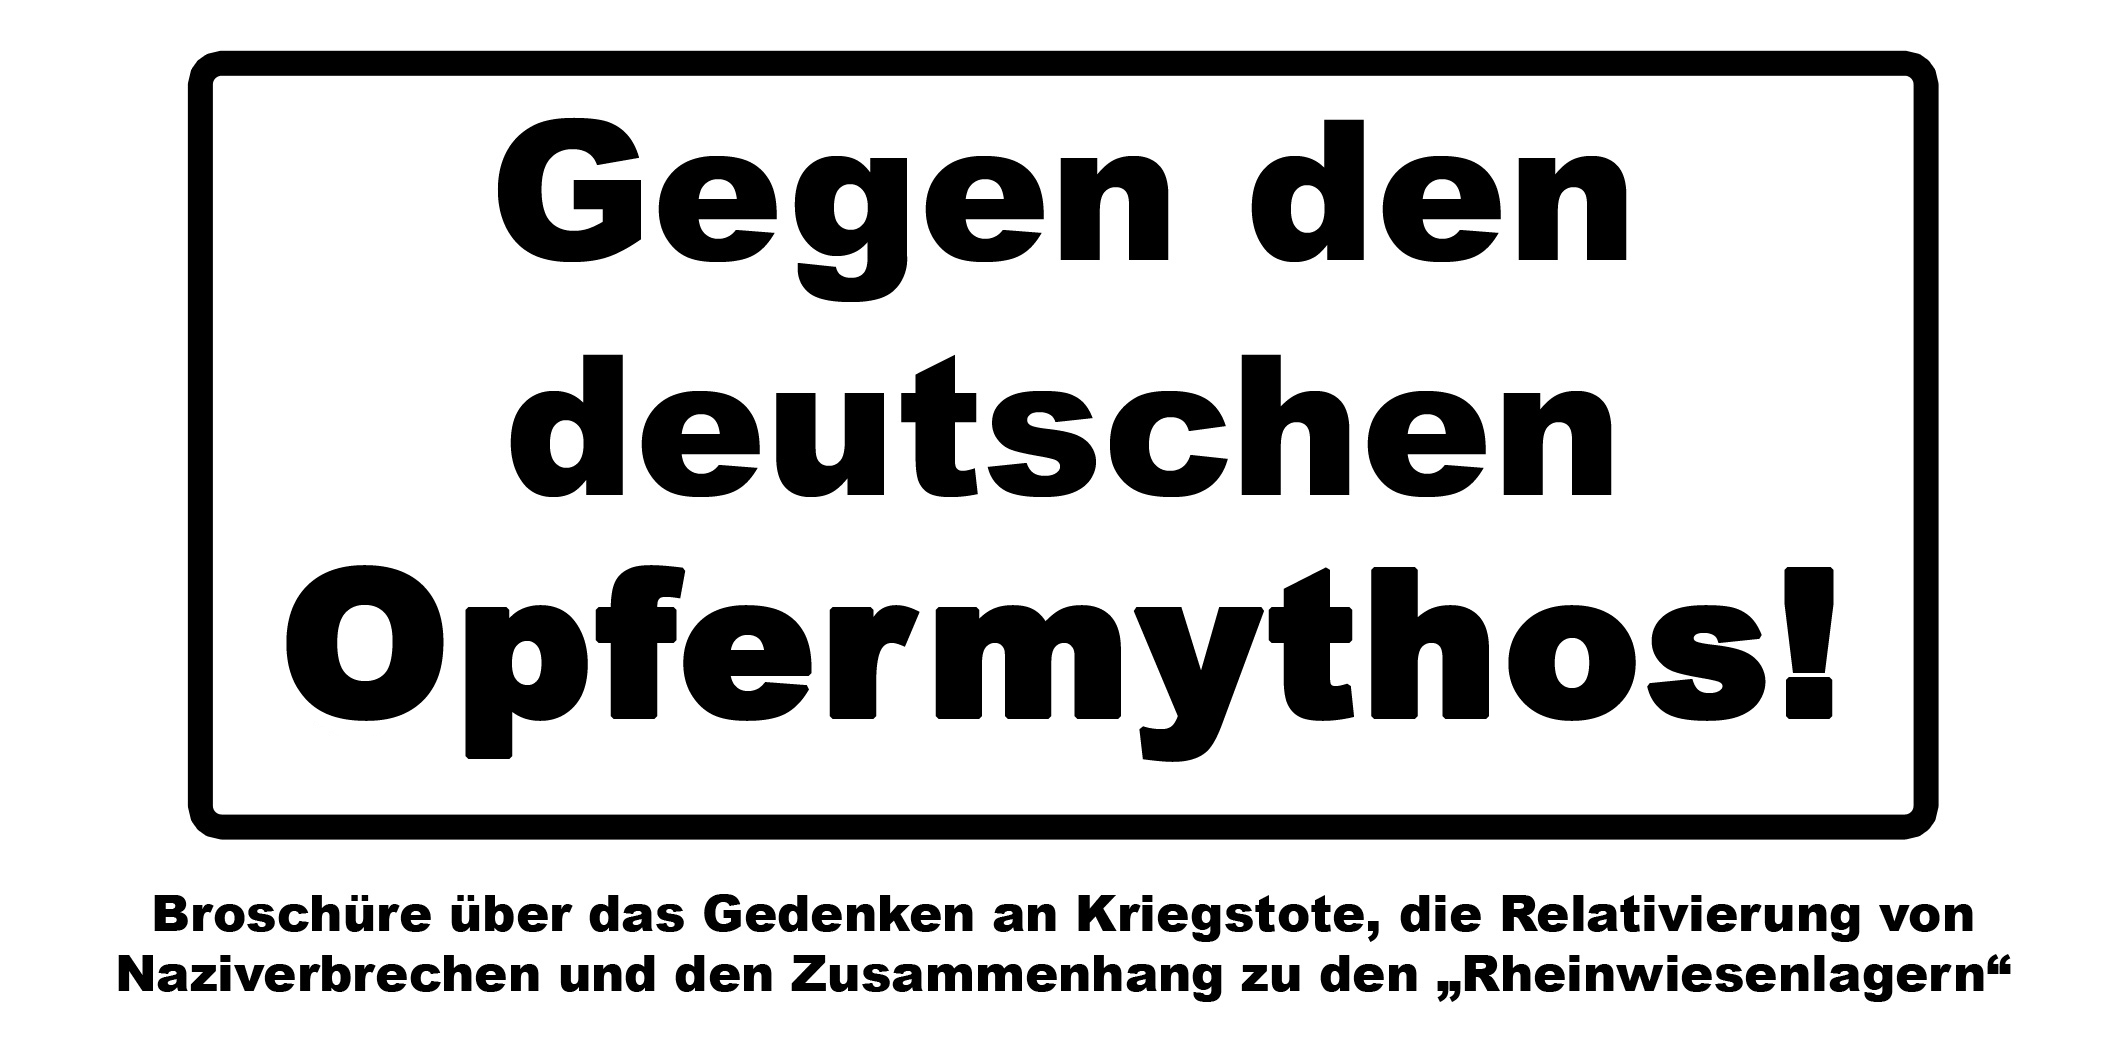 Broschüre: Gegen den deutschen Opfermythos!